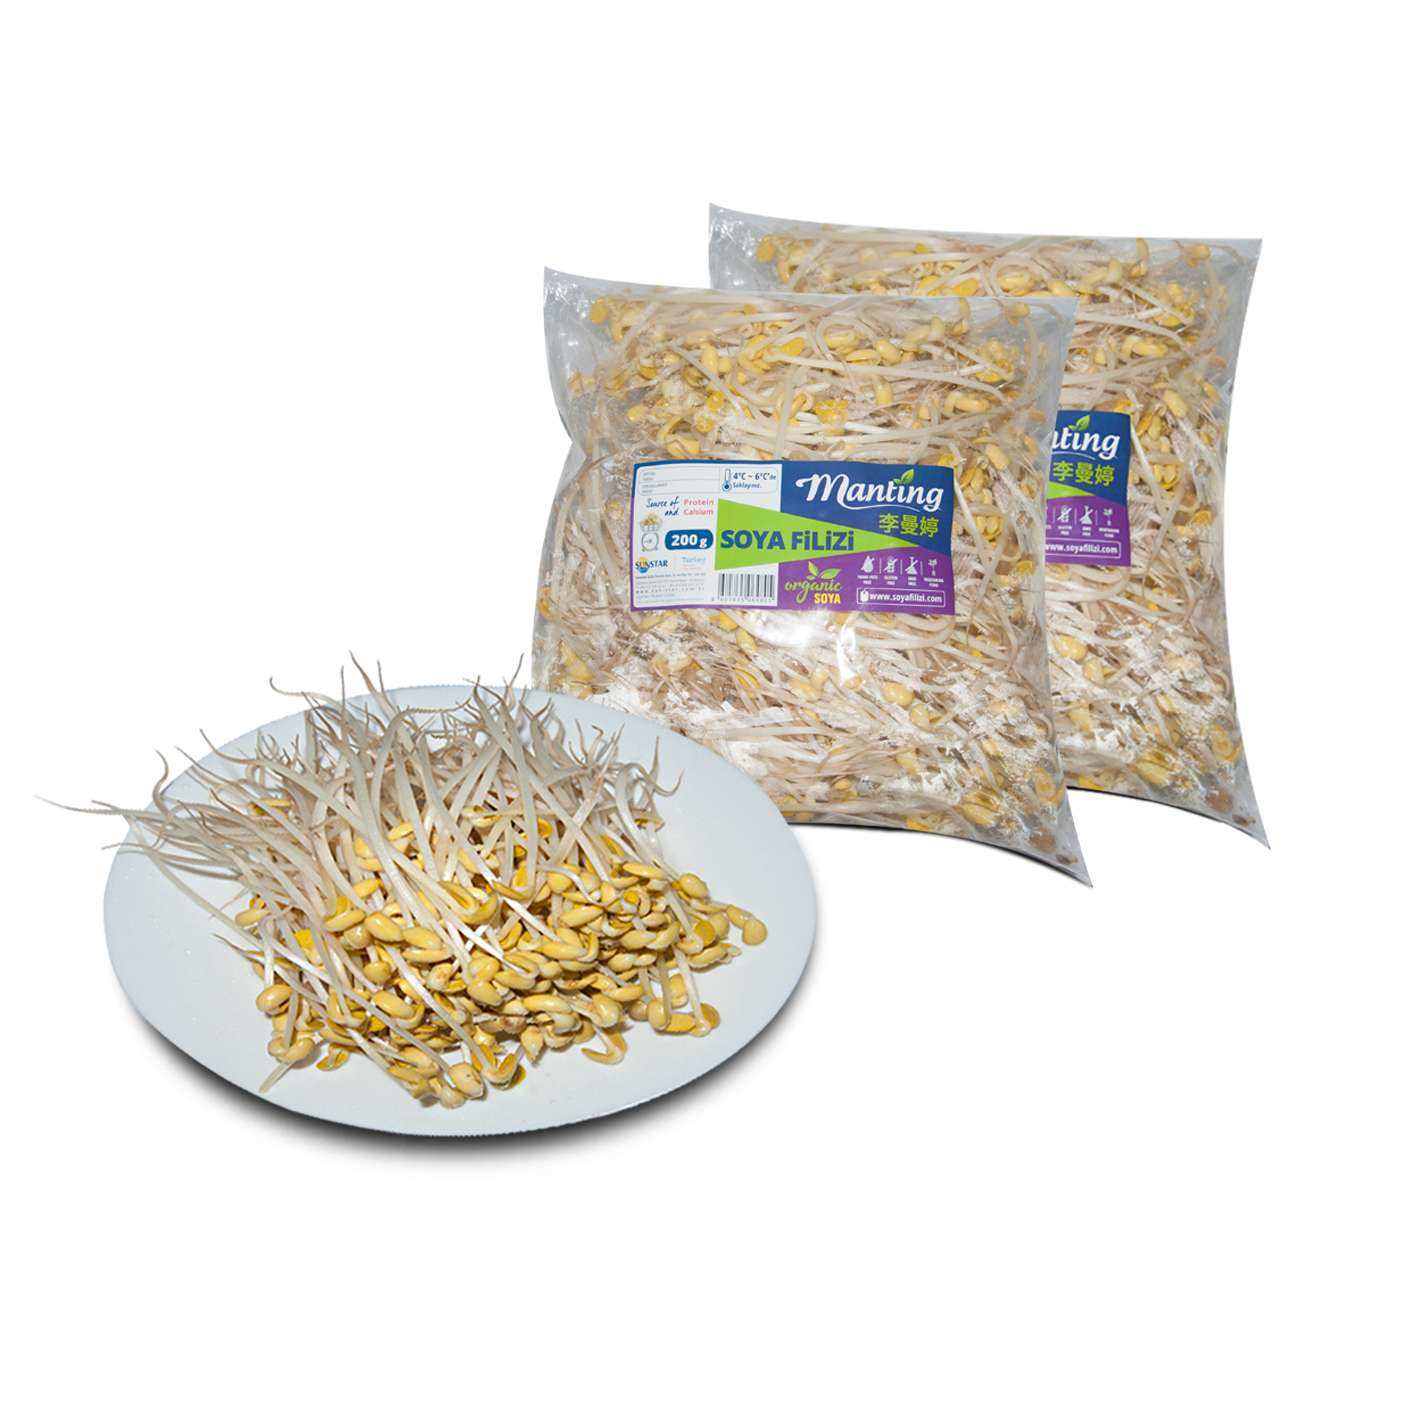 Soya Filizi - Soybean Sprouts